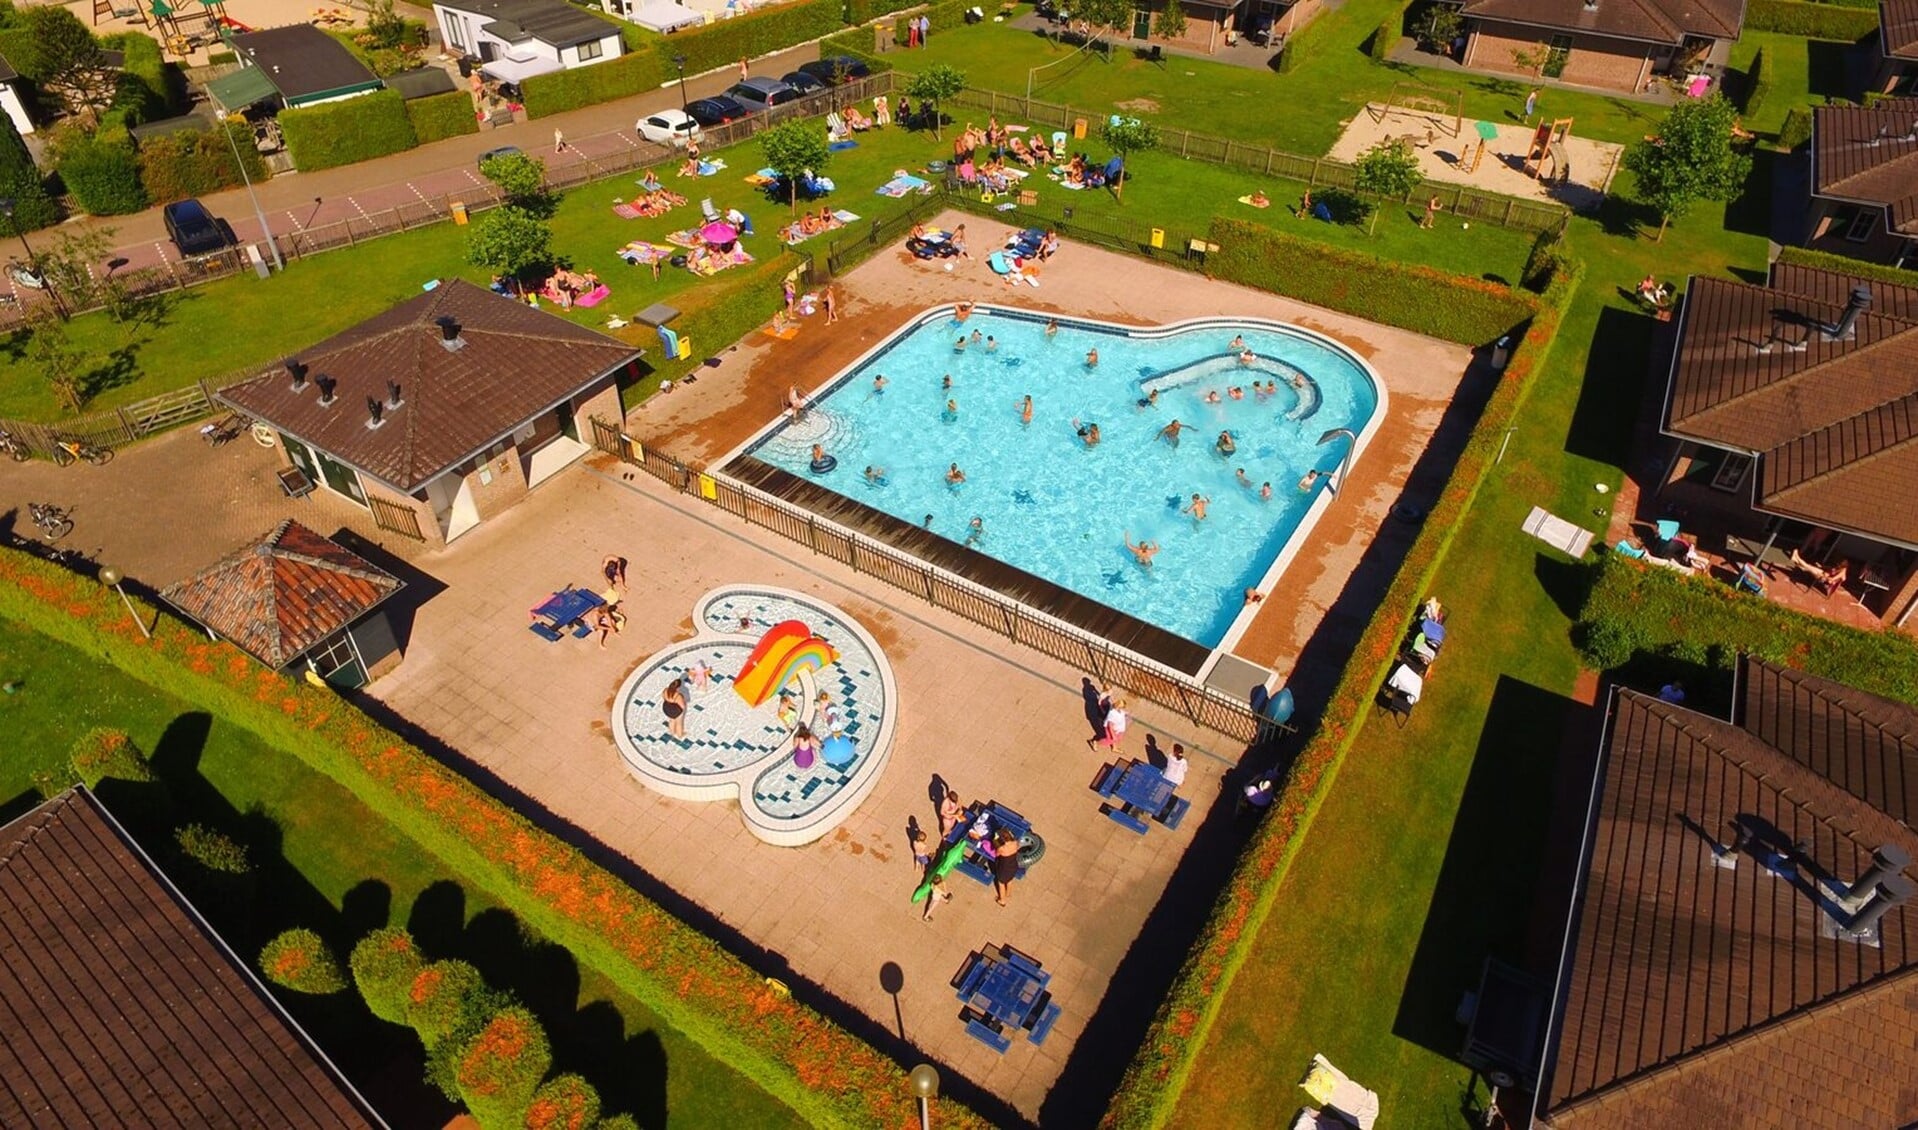 Het zwembad van recreatiepark De Boshoek.